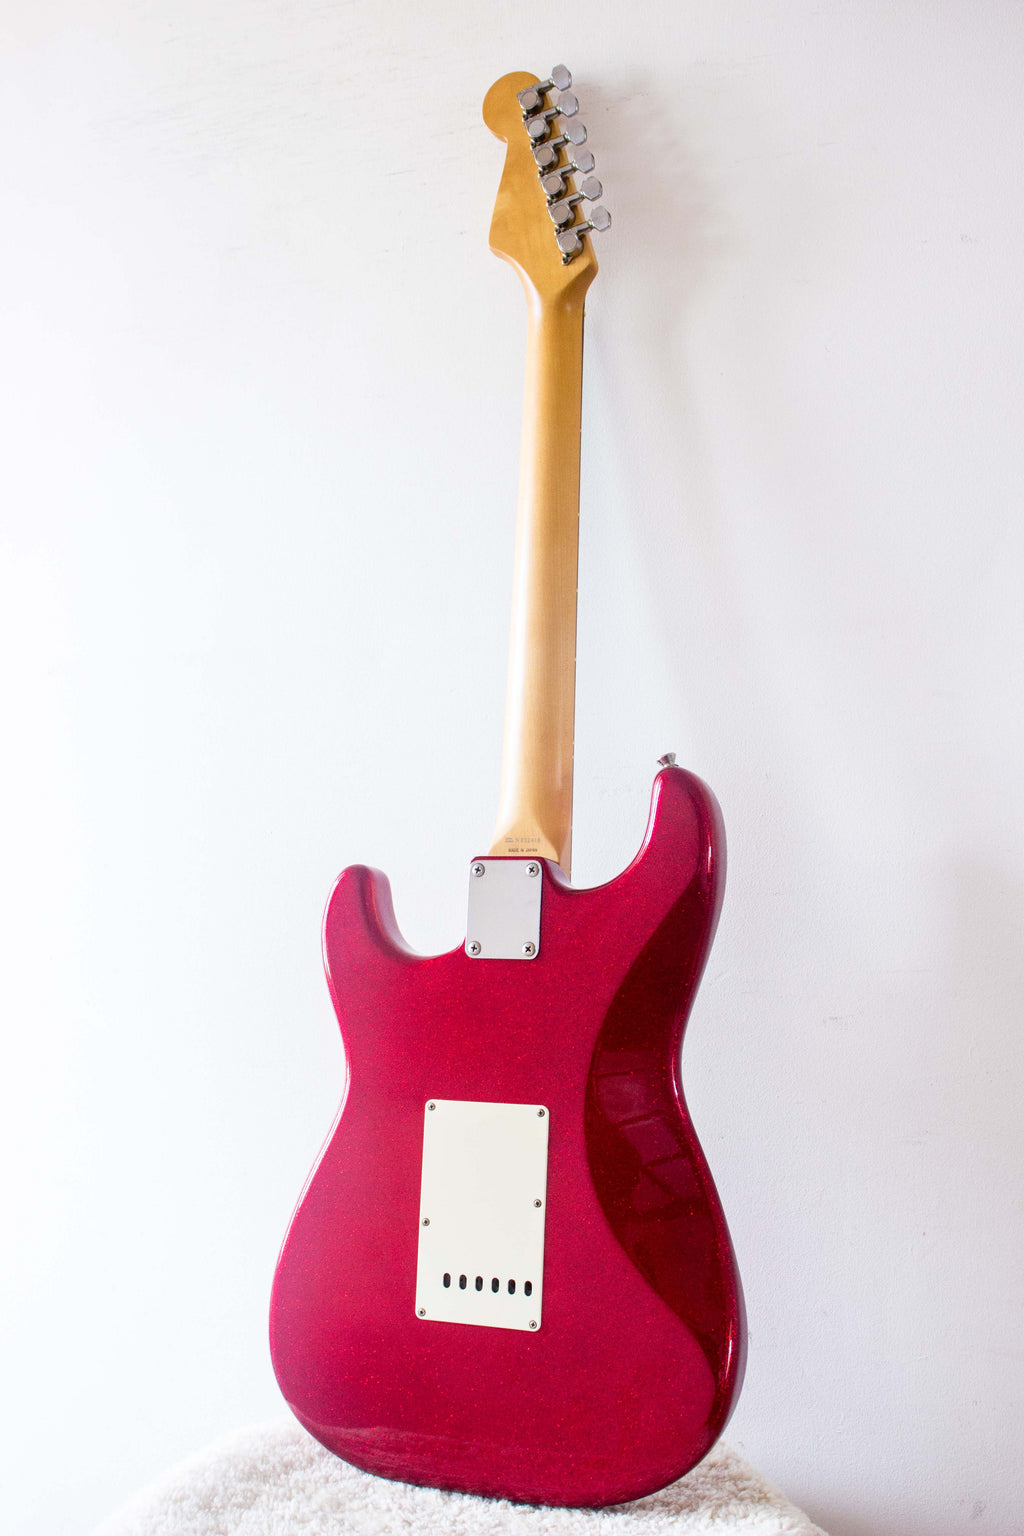 Fender Japan Stratocaster STR65SP Red Sparkle 1994